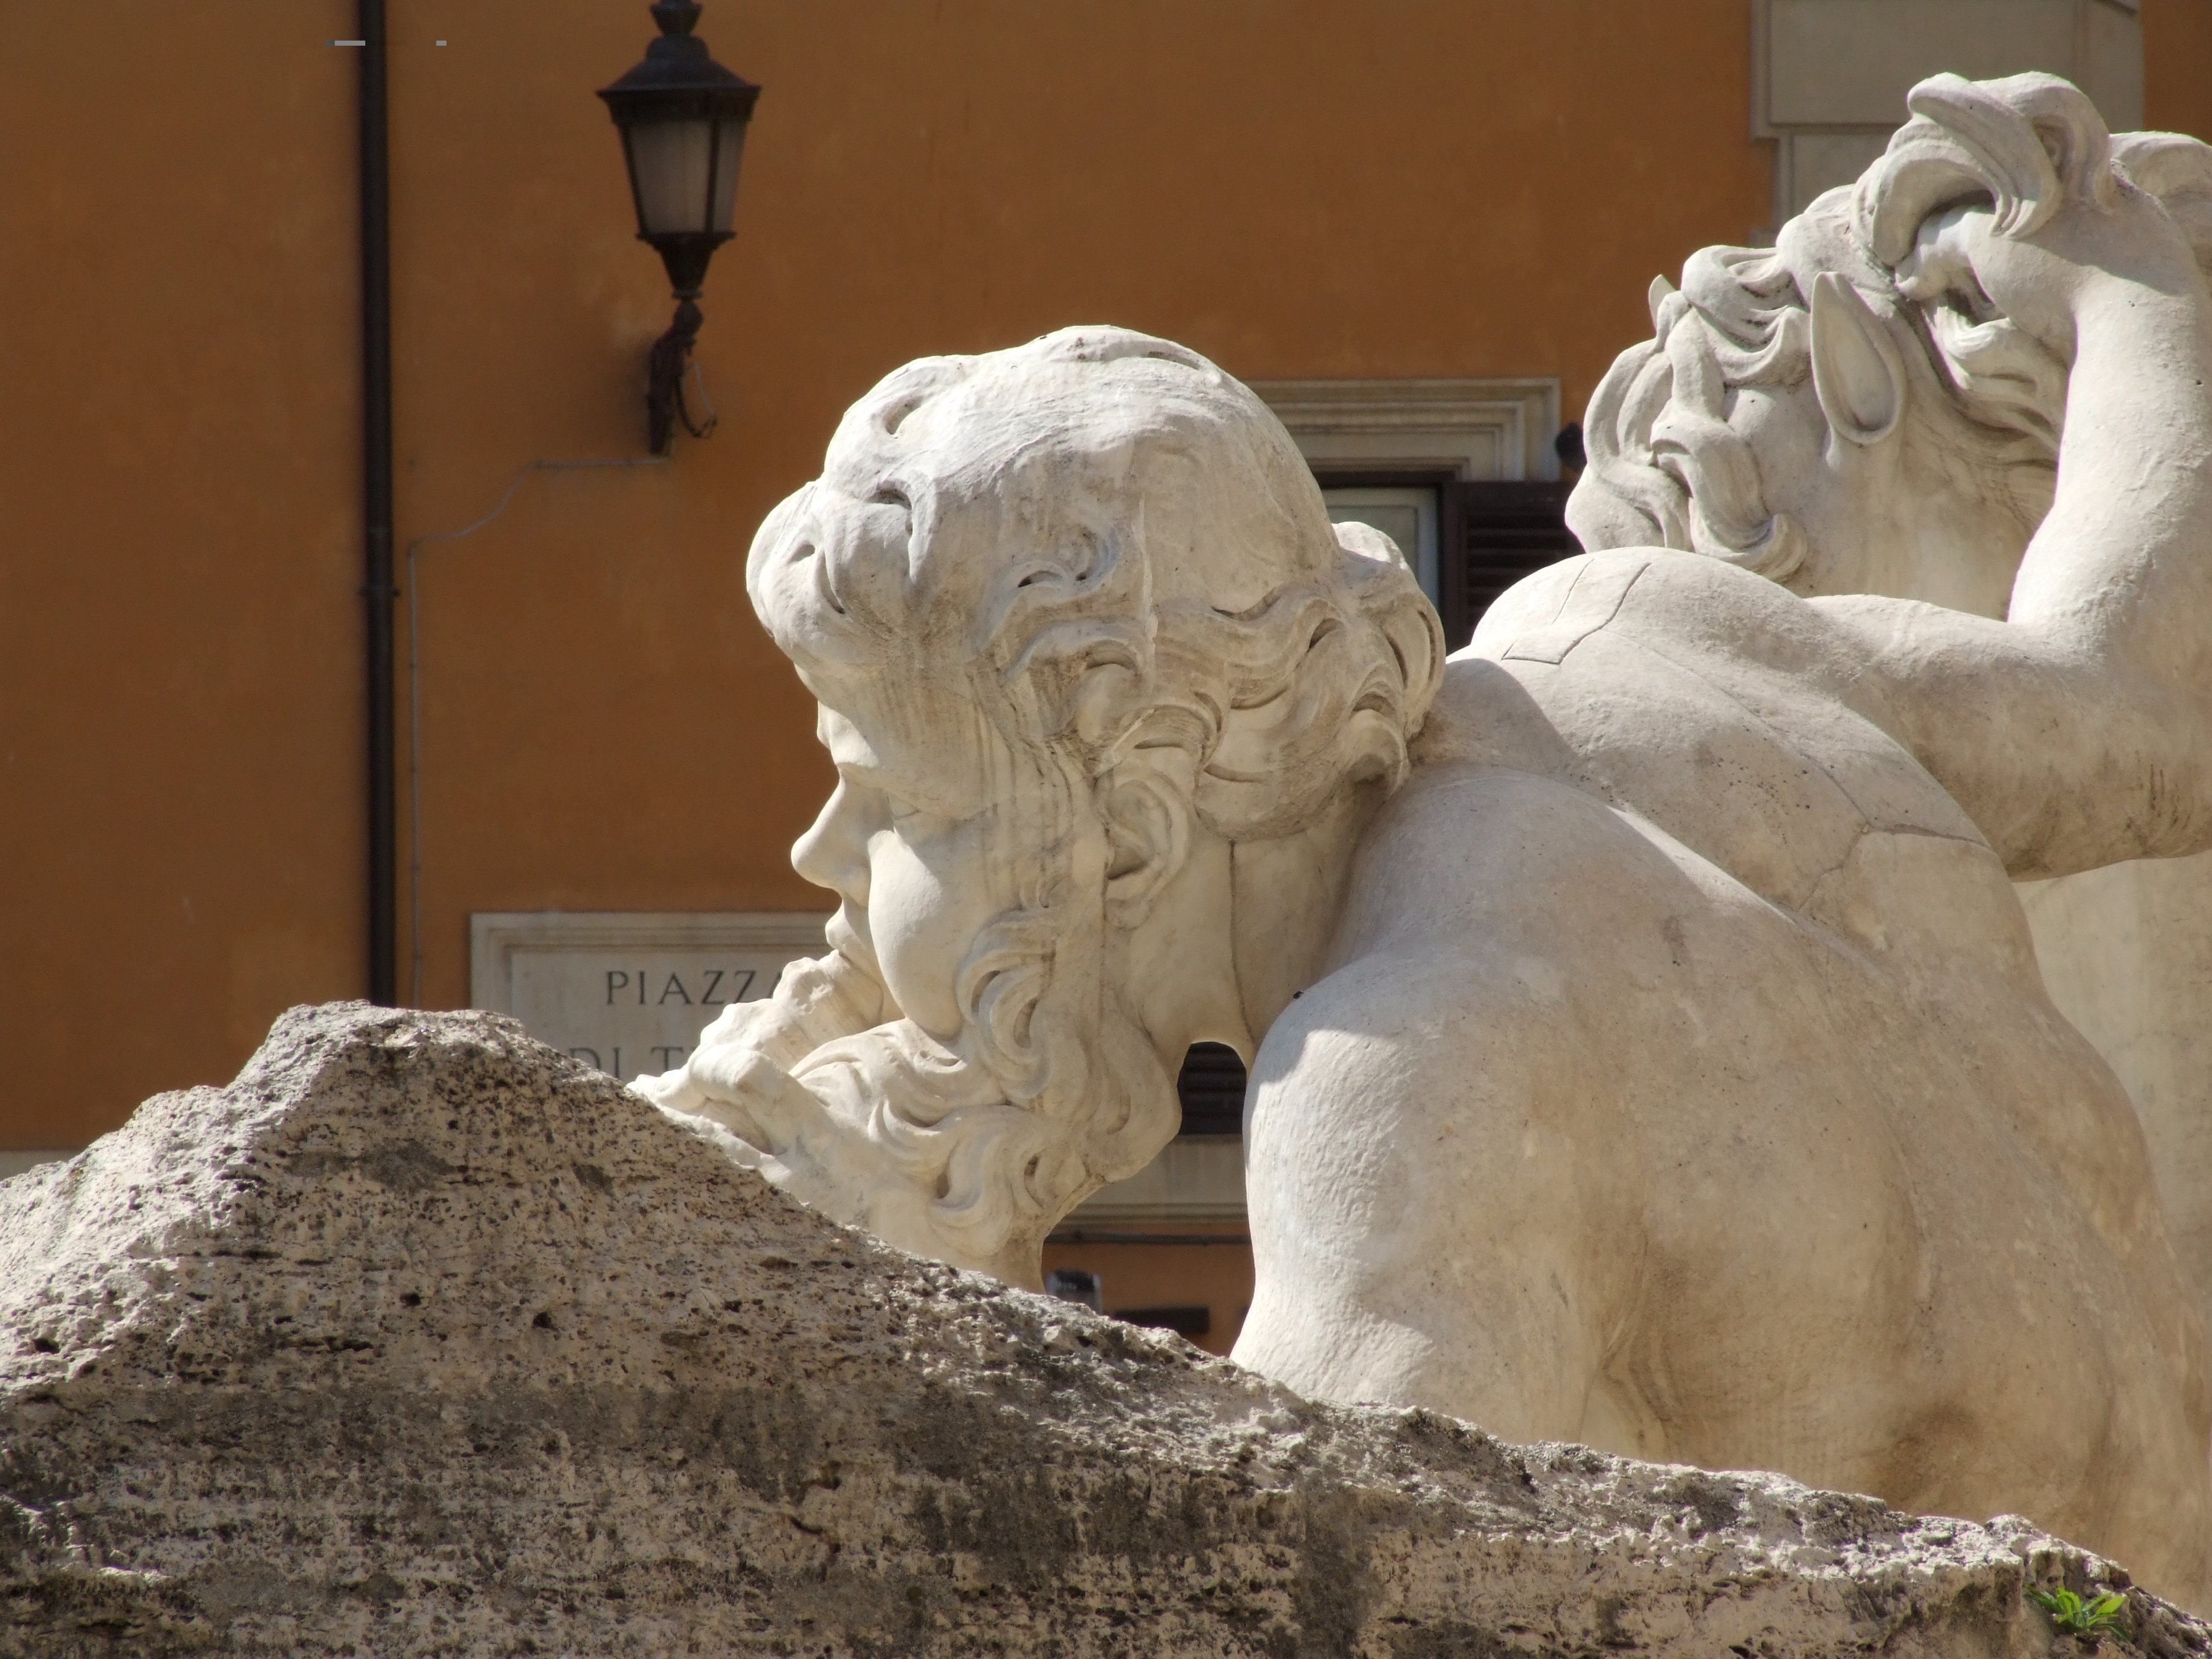 Fontana di trevi - italy - roma - creative commons by gnuckx photo